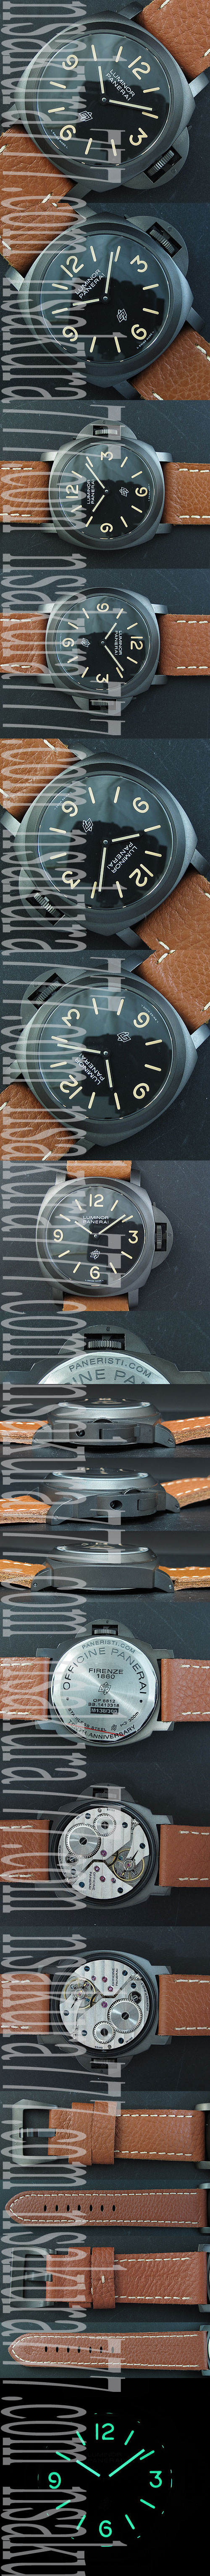 【好評人気】パネライ ルミノールマリーナ PAM00360コピー時計